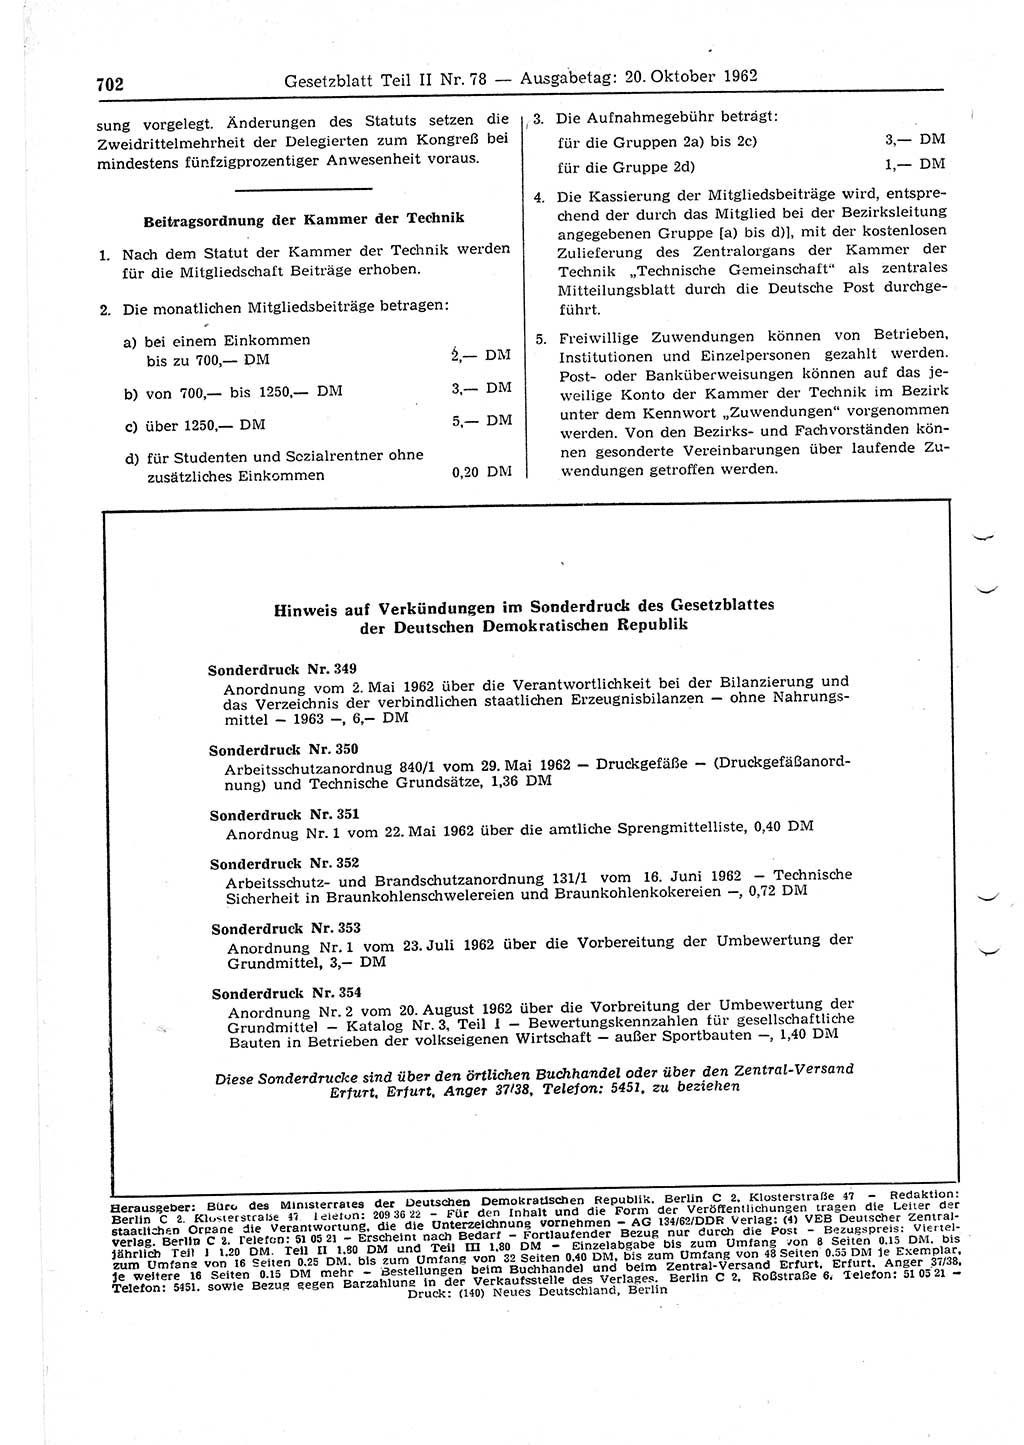 Gesetzblatt (GBl.) der Deutschen Demokratischen Republik (DDR) Teil ⅠⅠ 1962, Seite 702 (GBl. DDR ⅠⅠ 1962, S. 702)